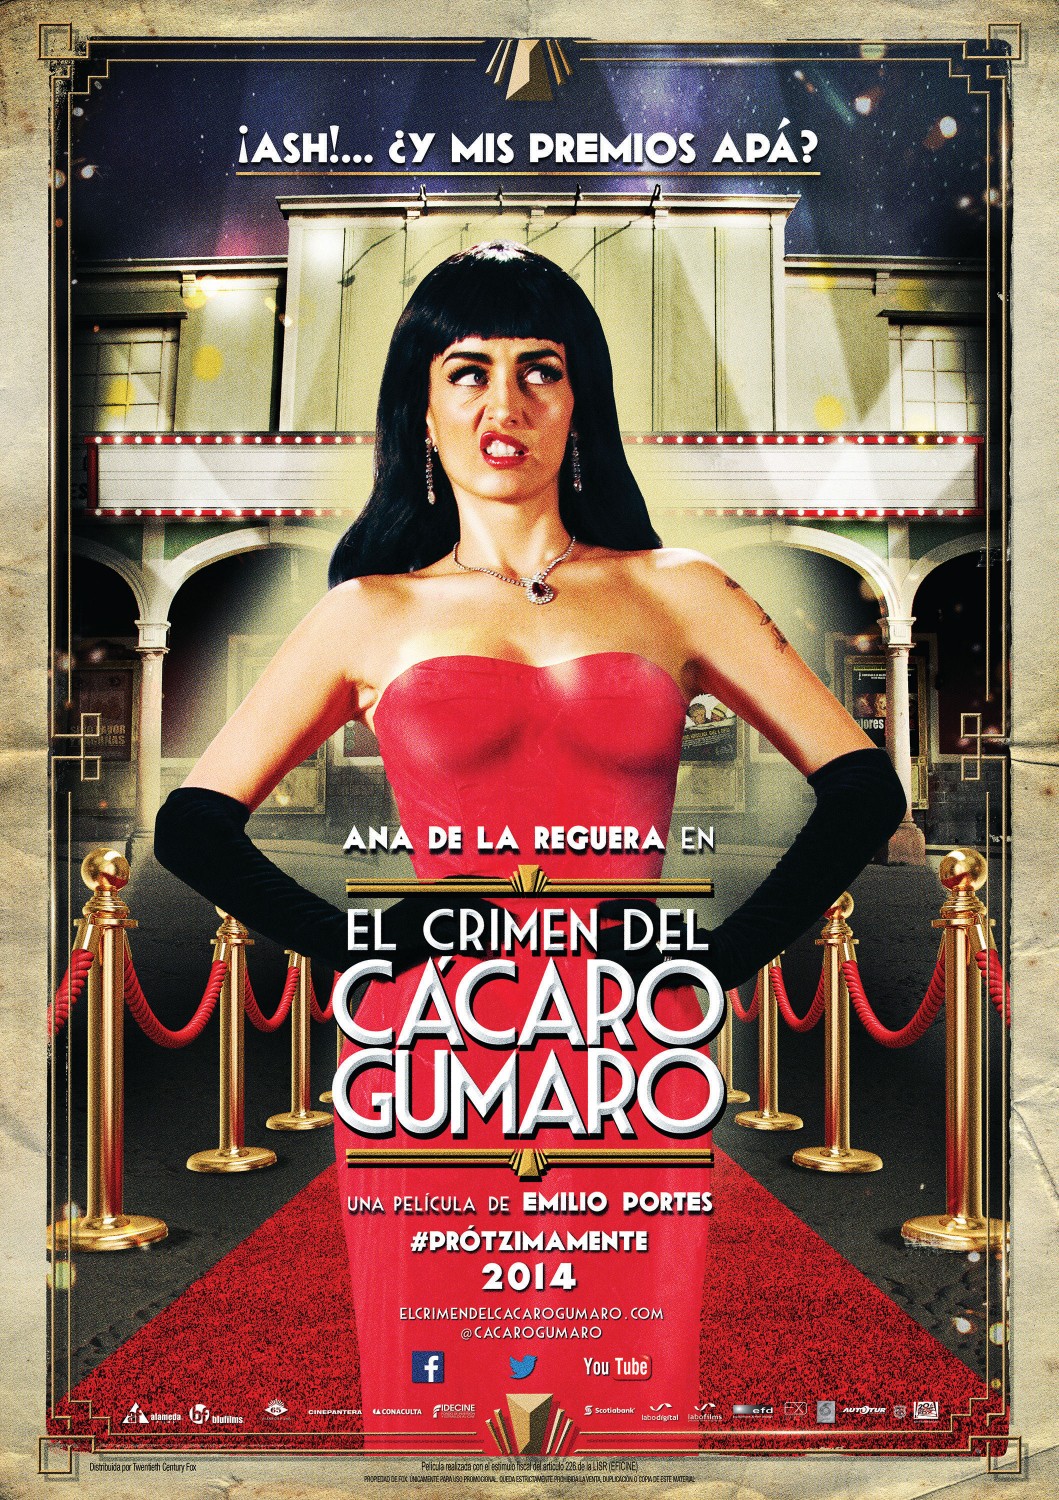 Extra Large Movie Poster Image for El Crimen del Cacaro Gumaro (#3 of 12)